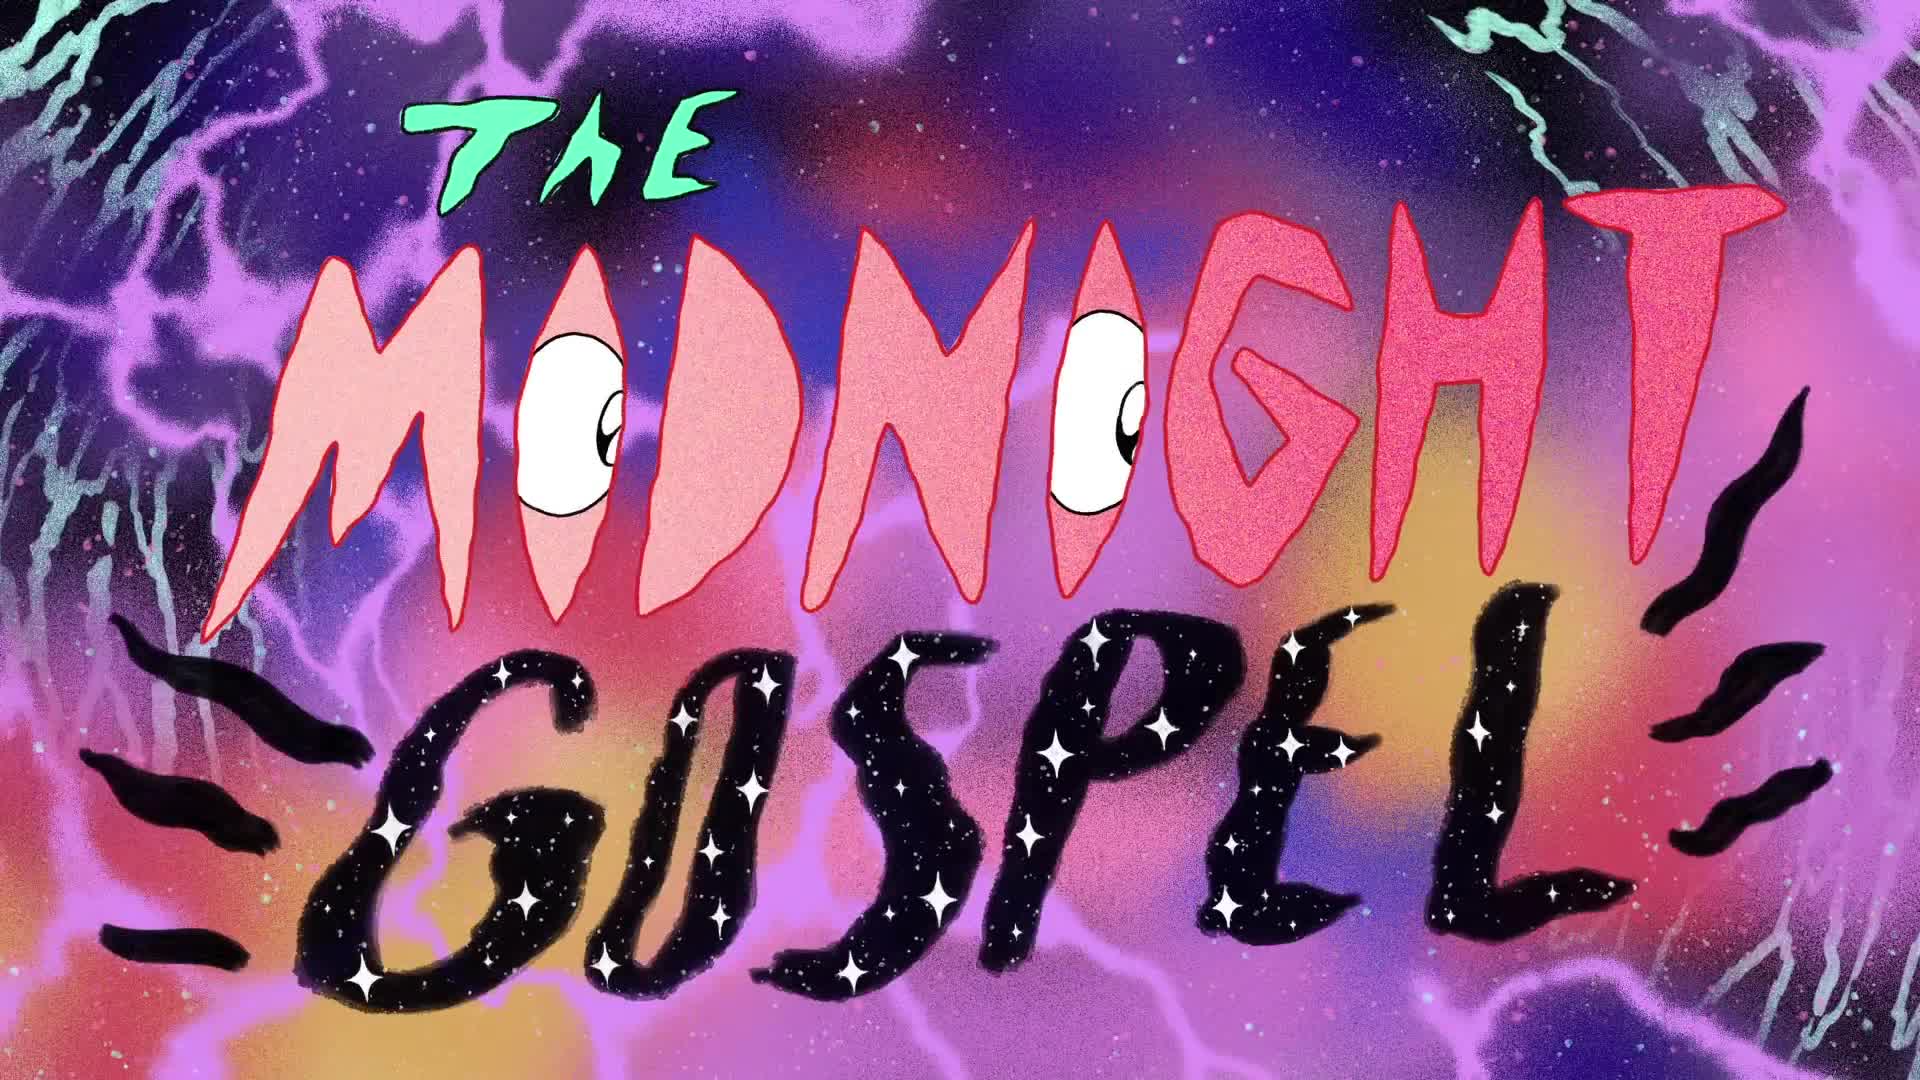 Midnight Gospel Wallpaper Free Midnight Gospel Background